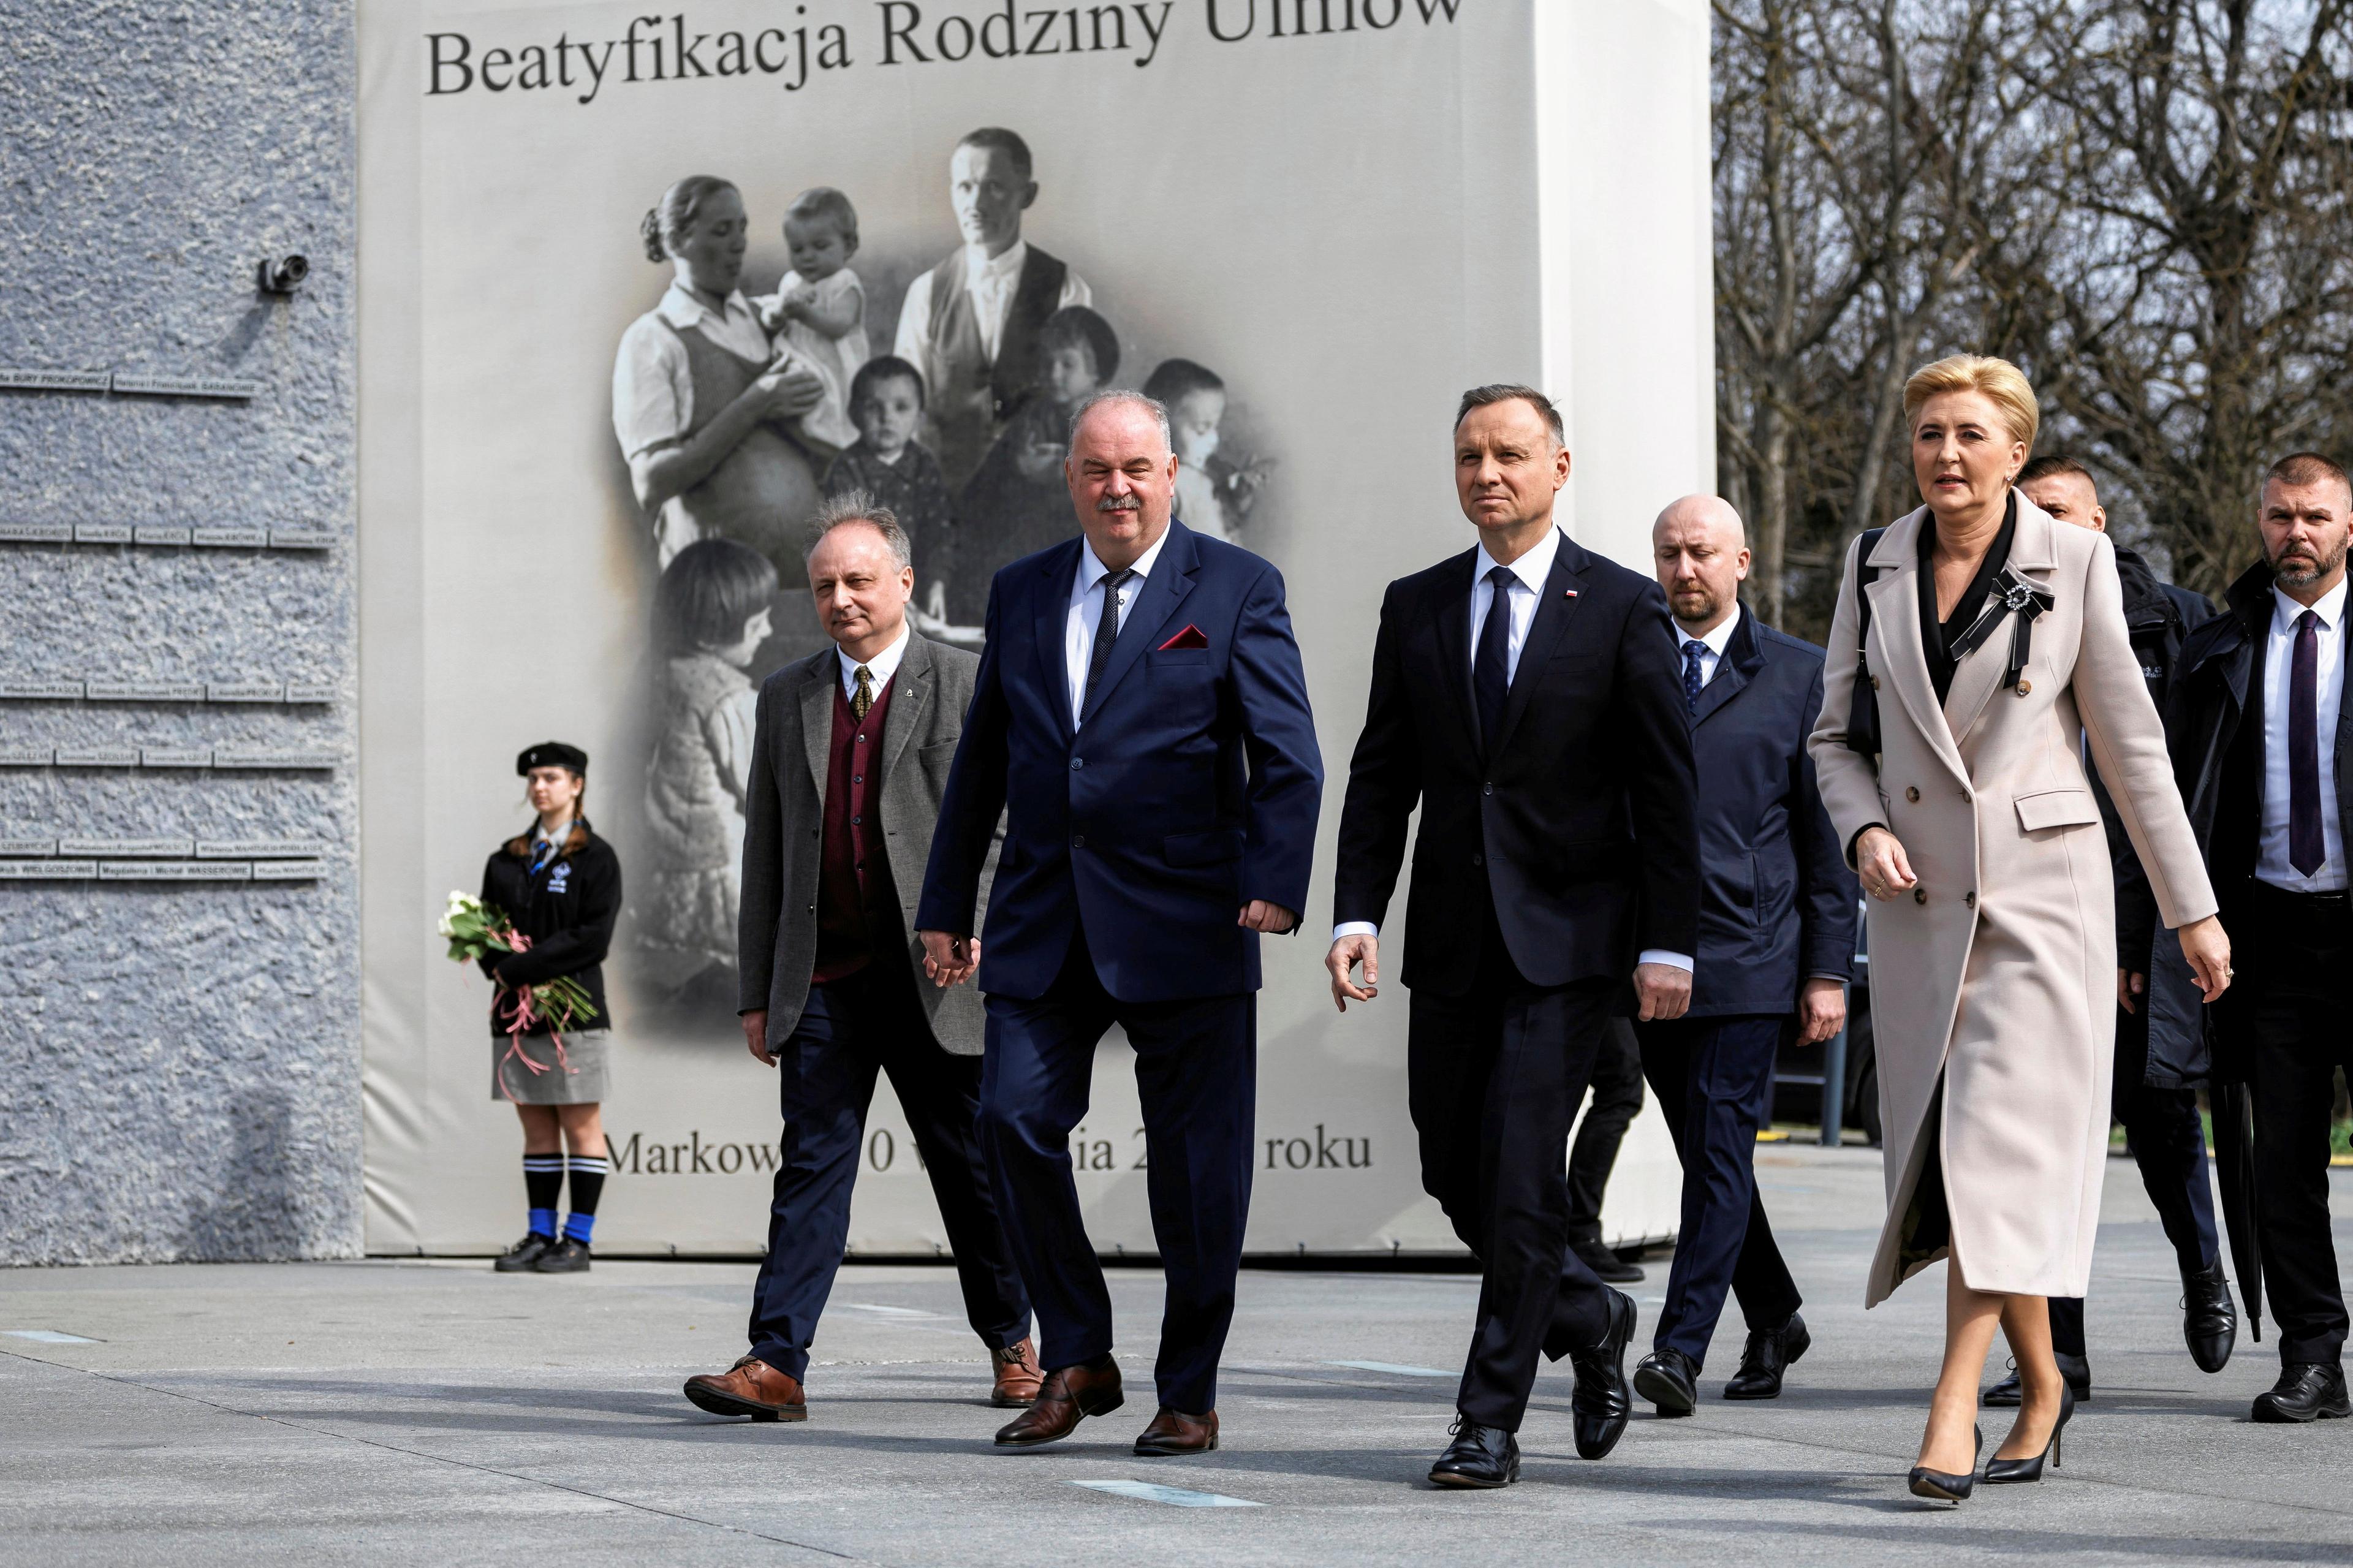 Prezydent Andrzej Duda z małżonką i urzędnikami idzie dziedzińcem muzeum, w tle platak przedstawiający zdjęcie rodziny z dziećmi z napisem Beatyfikacja Rodziny Ulmów